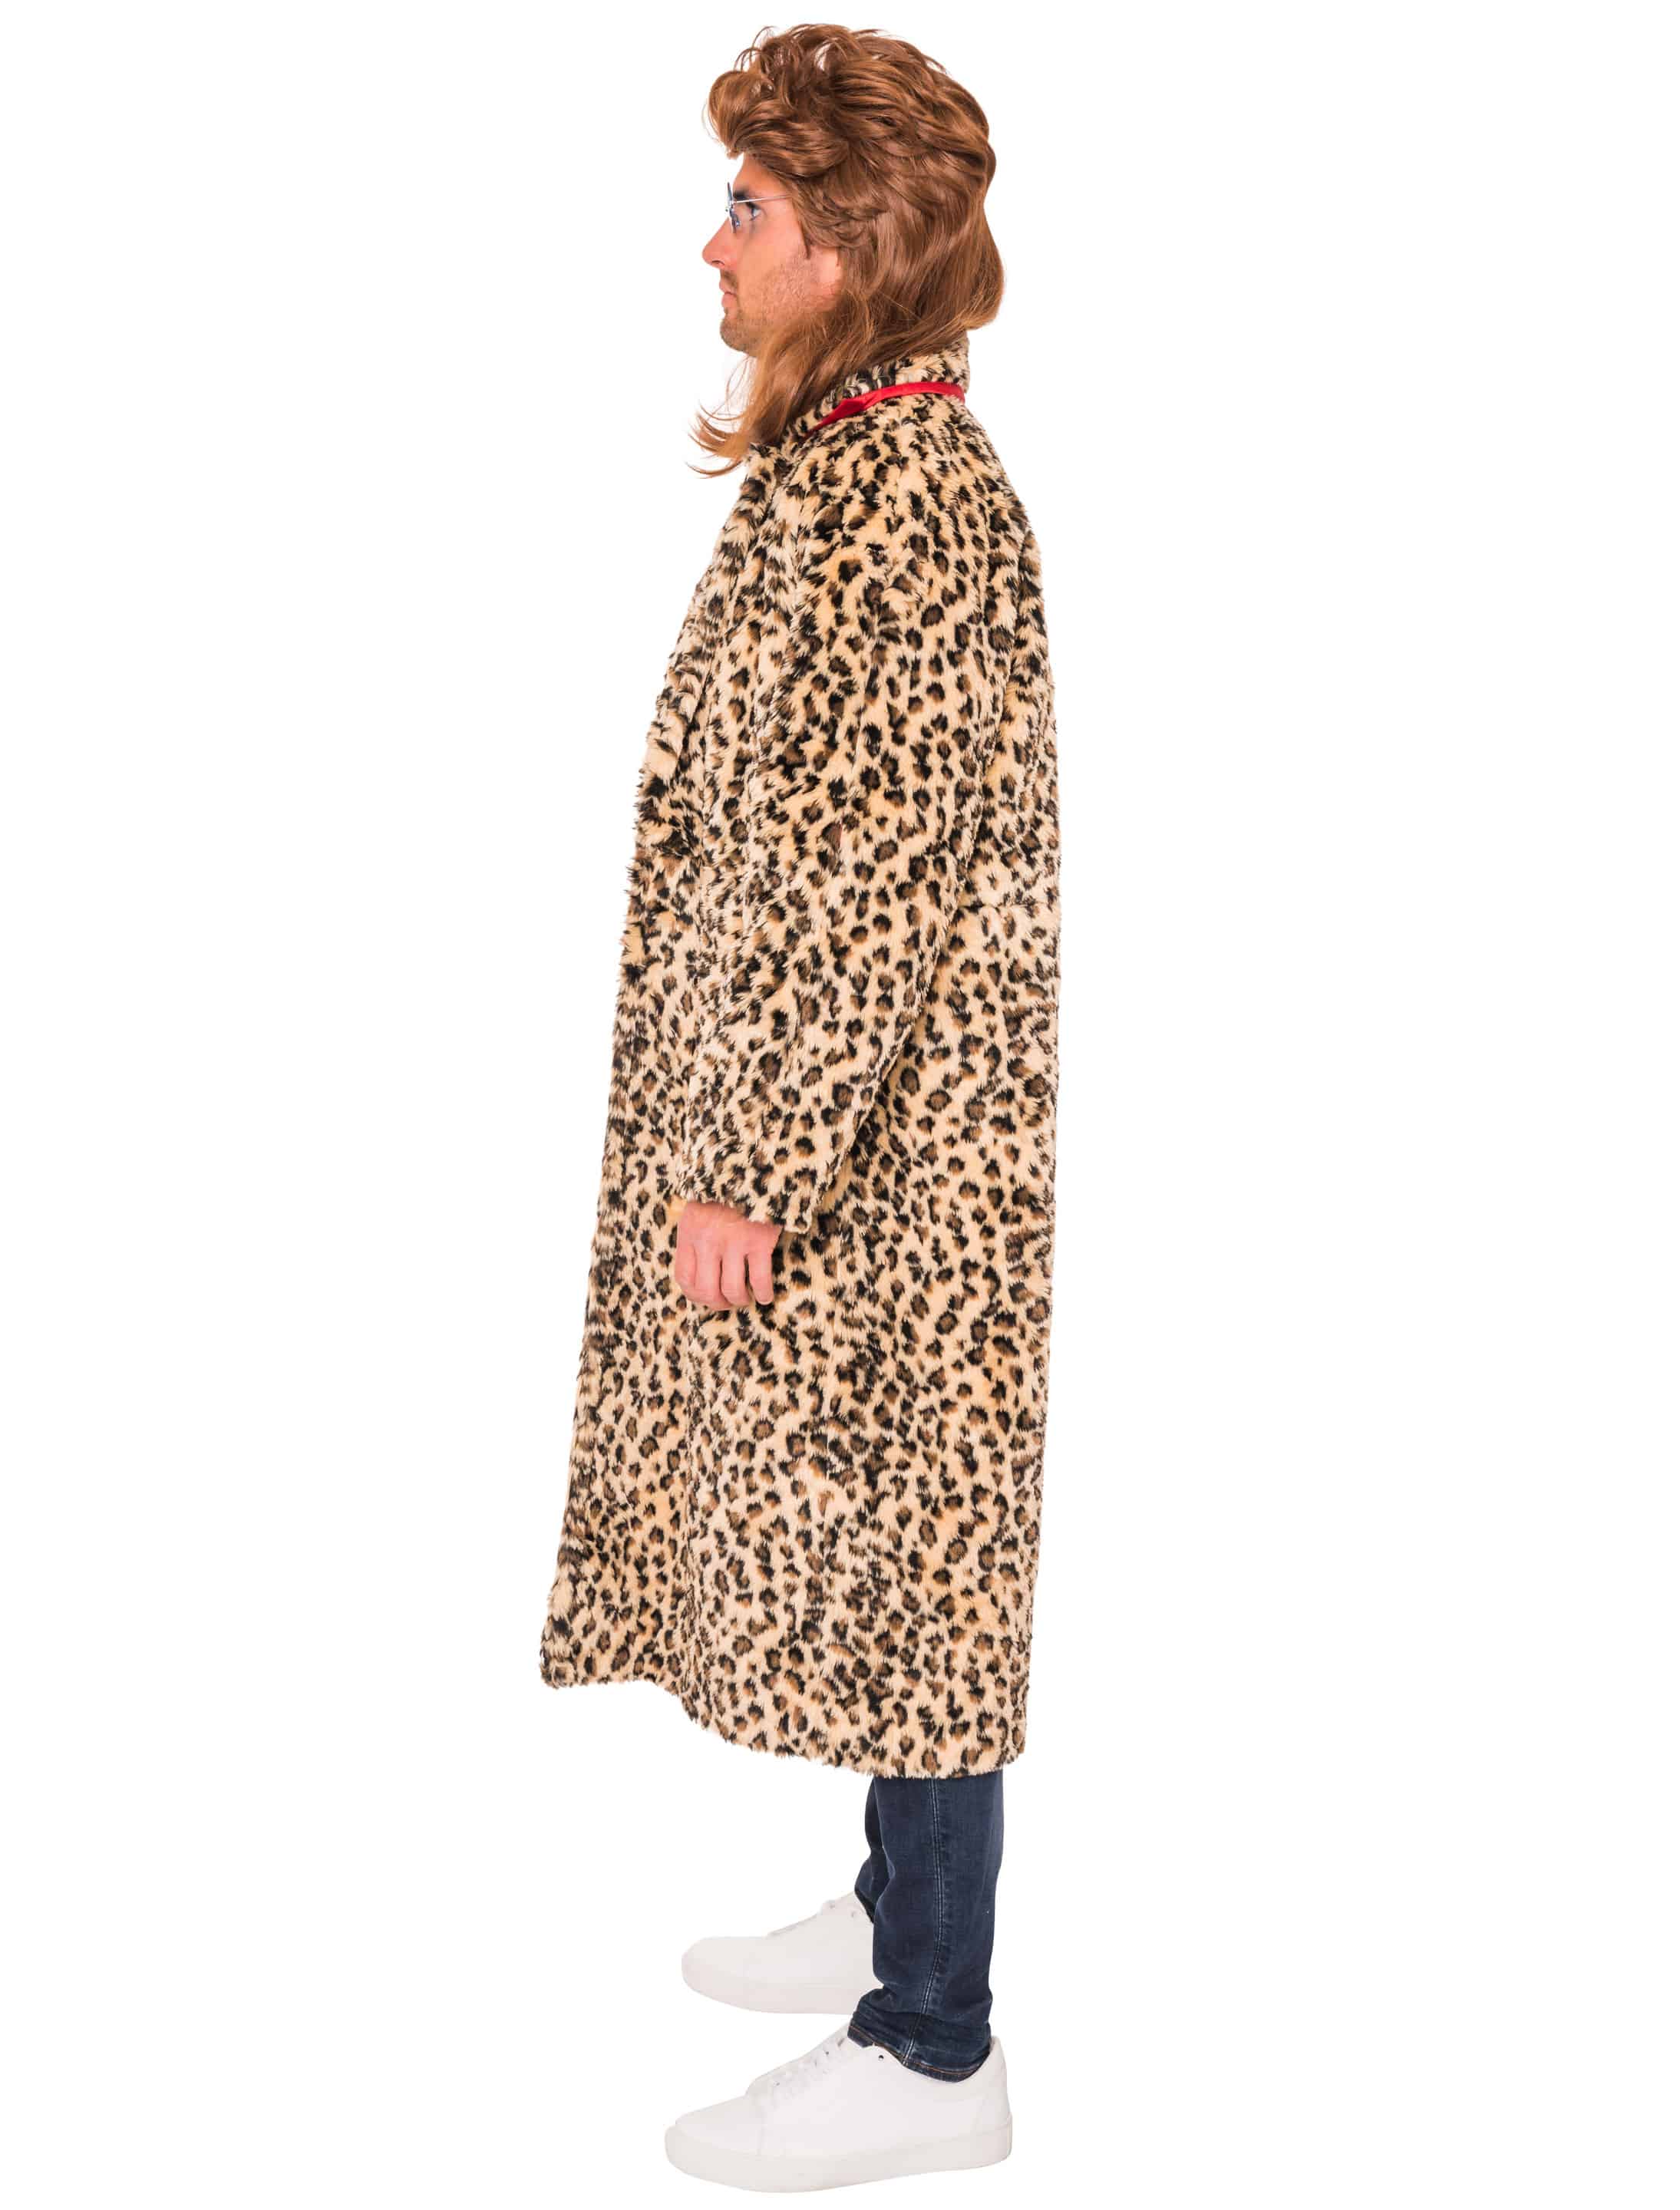 Mantel Leopardenmuster braun/schwarz L/XL